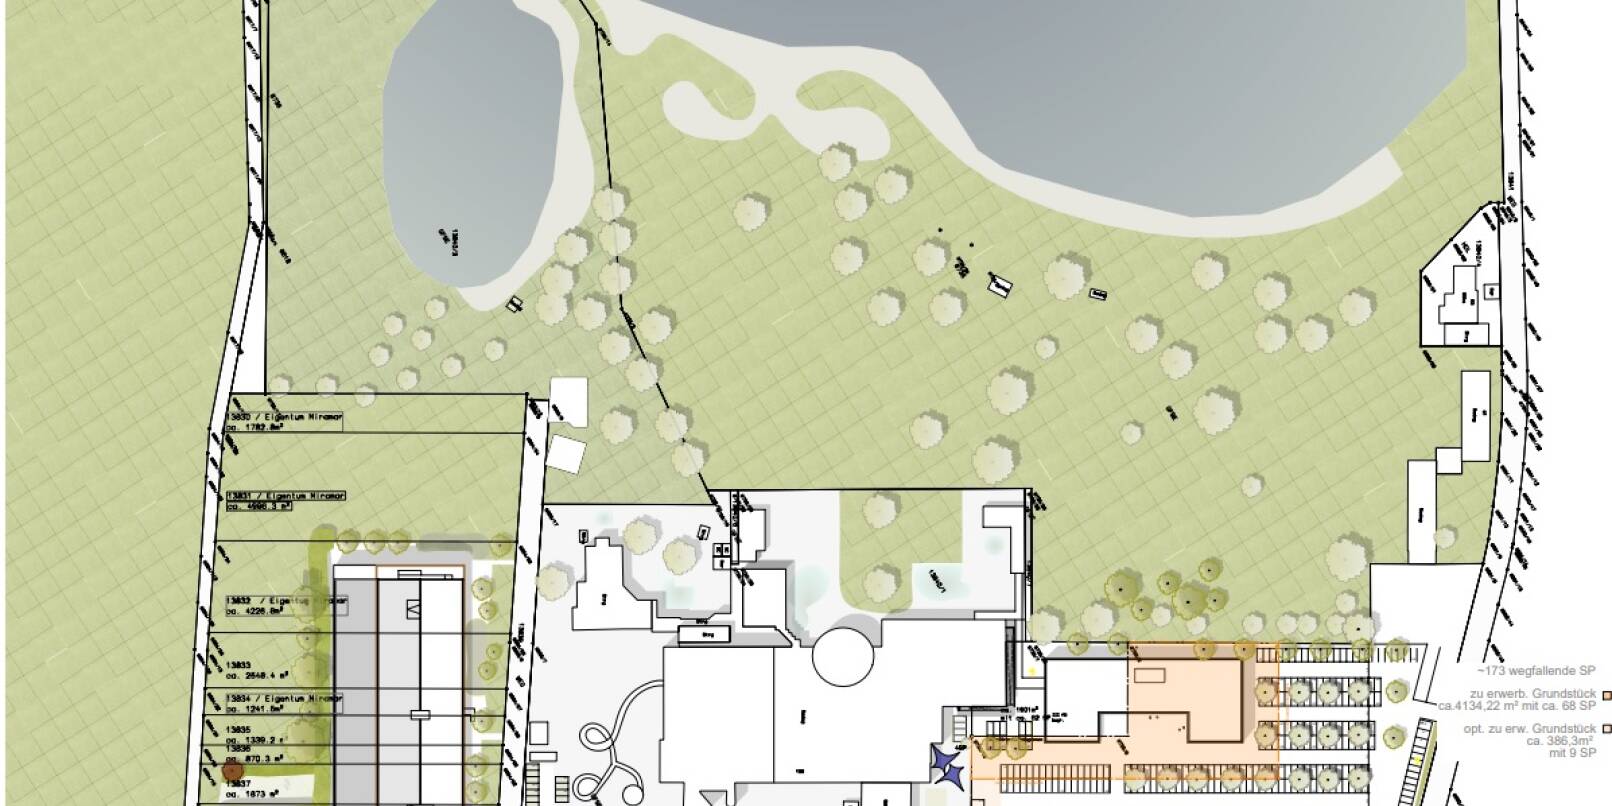 So sieht der Entwurf für die Aufteilung der Flächen am Waidsee aus. Links vom Freizeitbad Miramar ist das geplante Parkdeck eingezeichnet, rechts davon die Fläche für das Hotel auf dem vorhandenen Parkplatz.